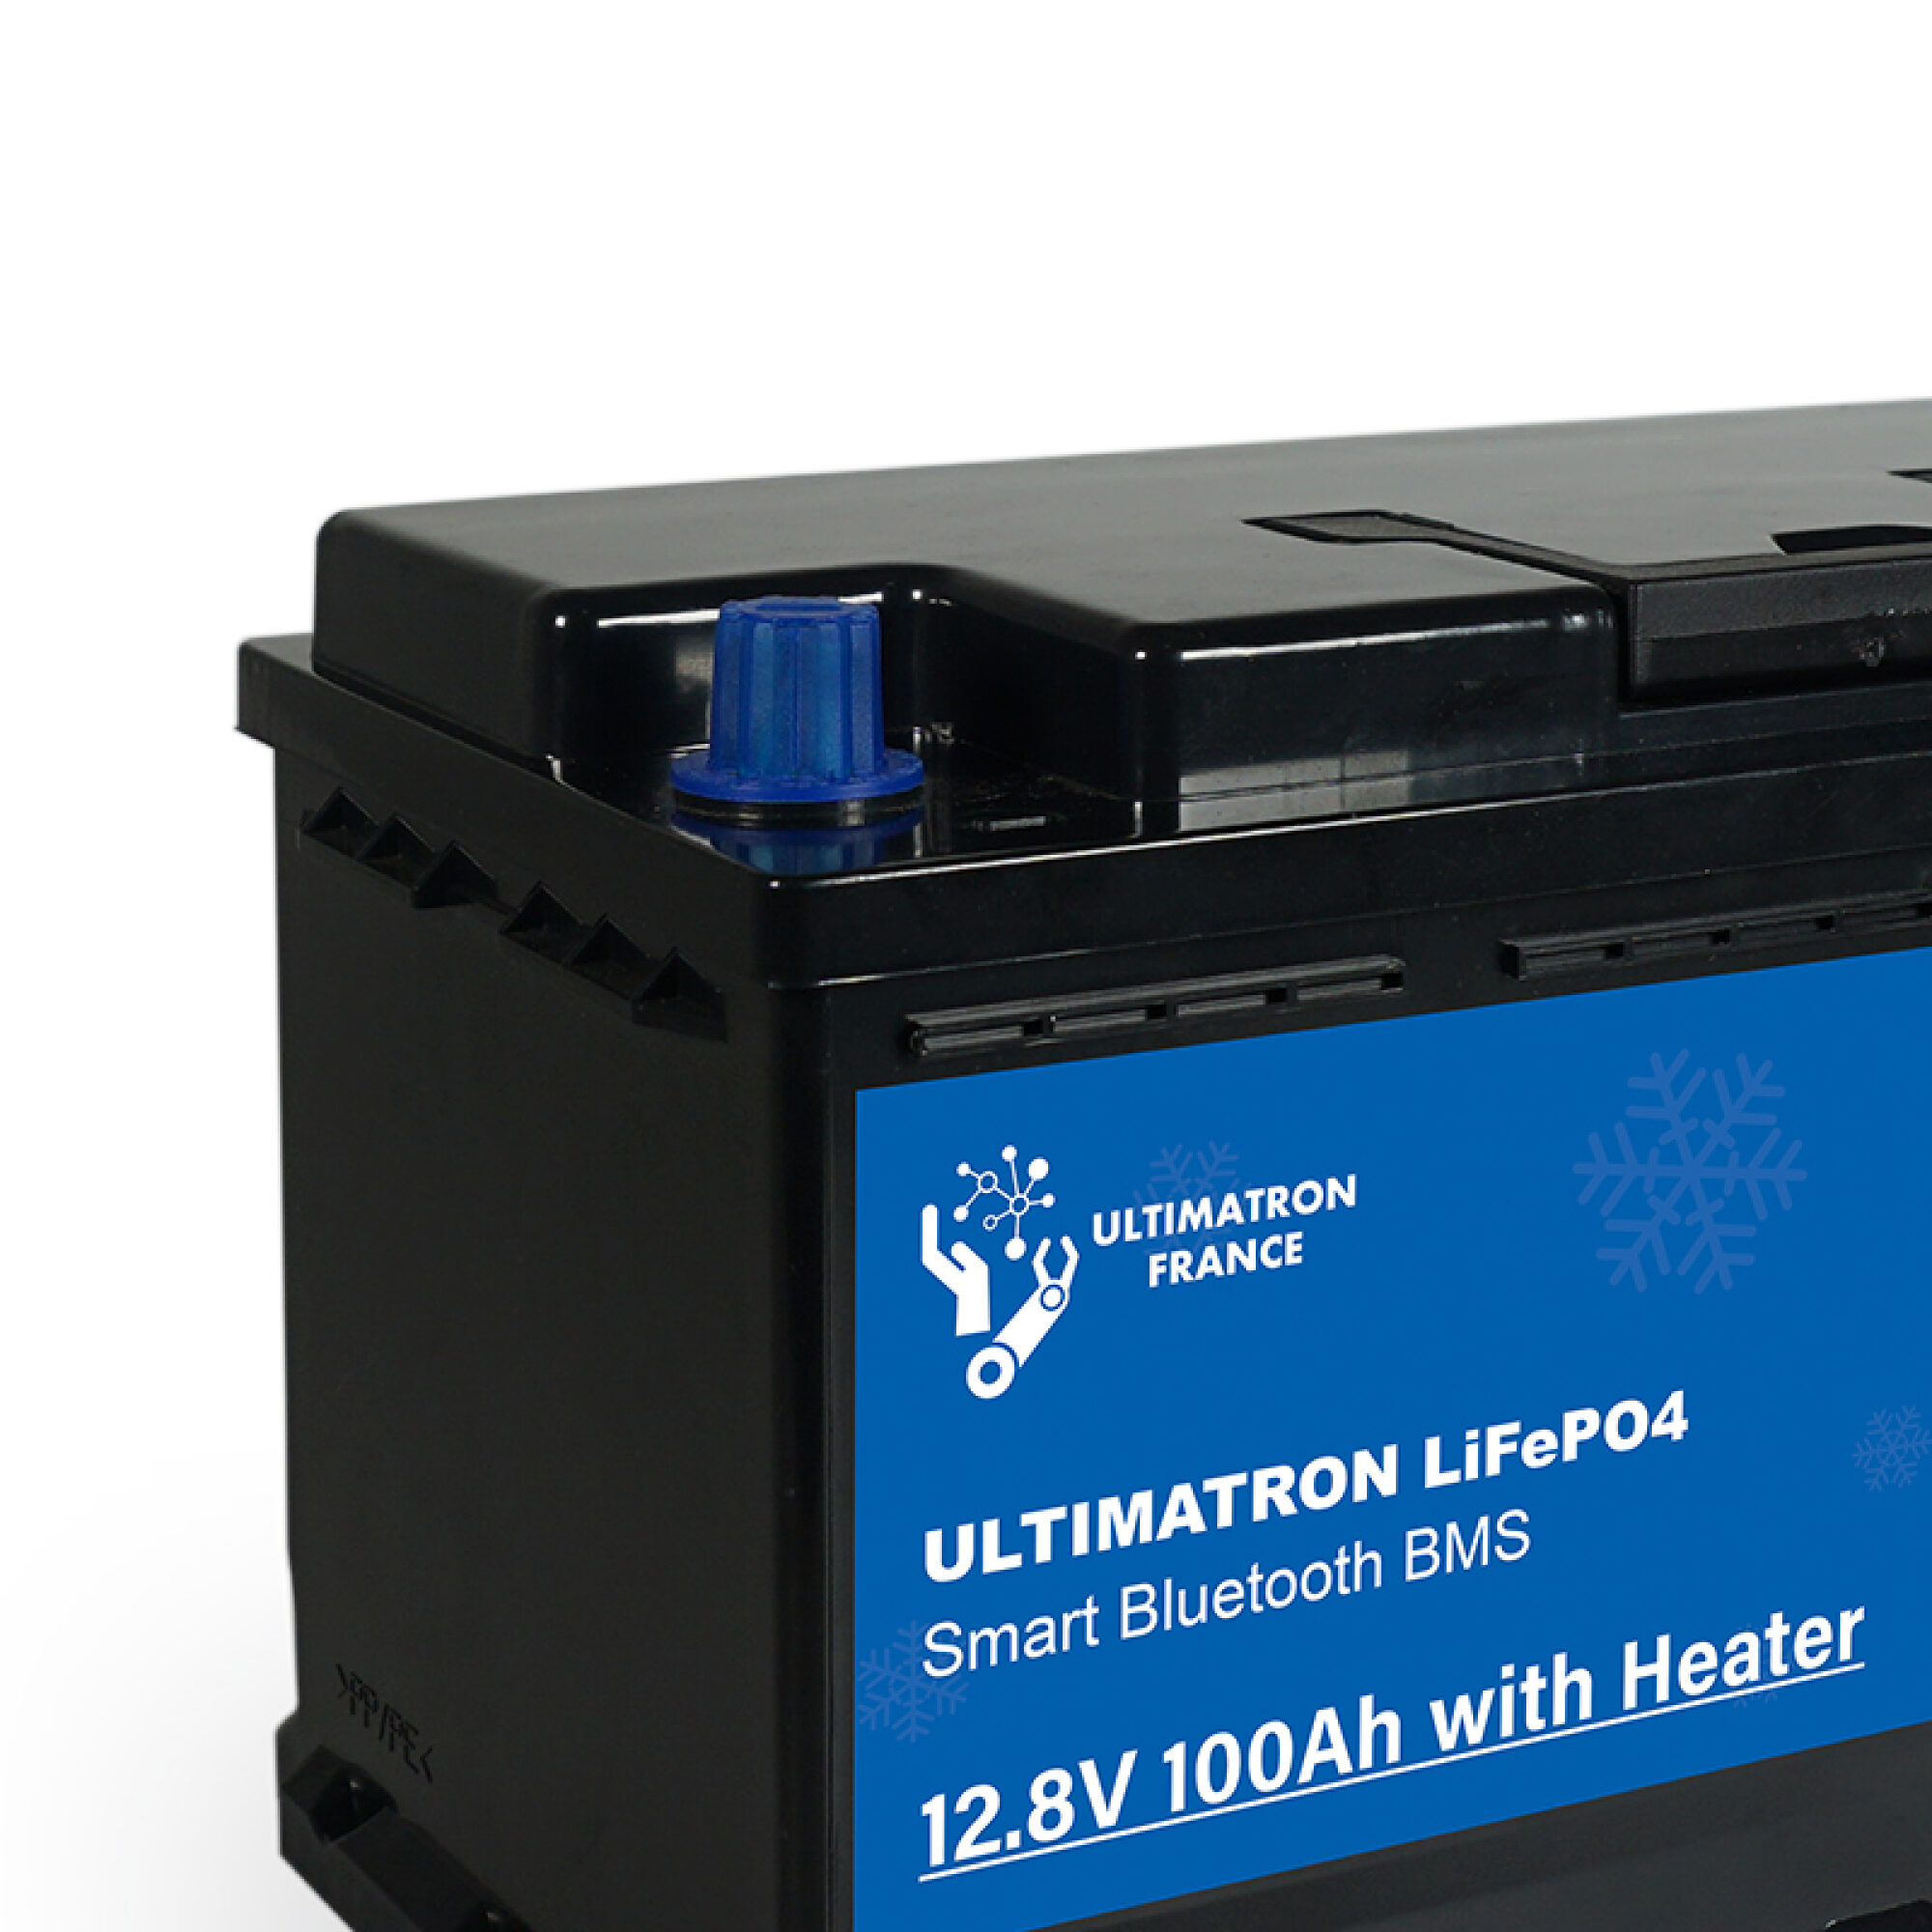 Ultimatron LiFePO4 Untersitz-12.8V-Heizung 100Ah Lithiumbatterie Smart BMS mit Bluetooth Wohnmobil Untersitzbatterie mit Heizung